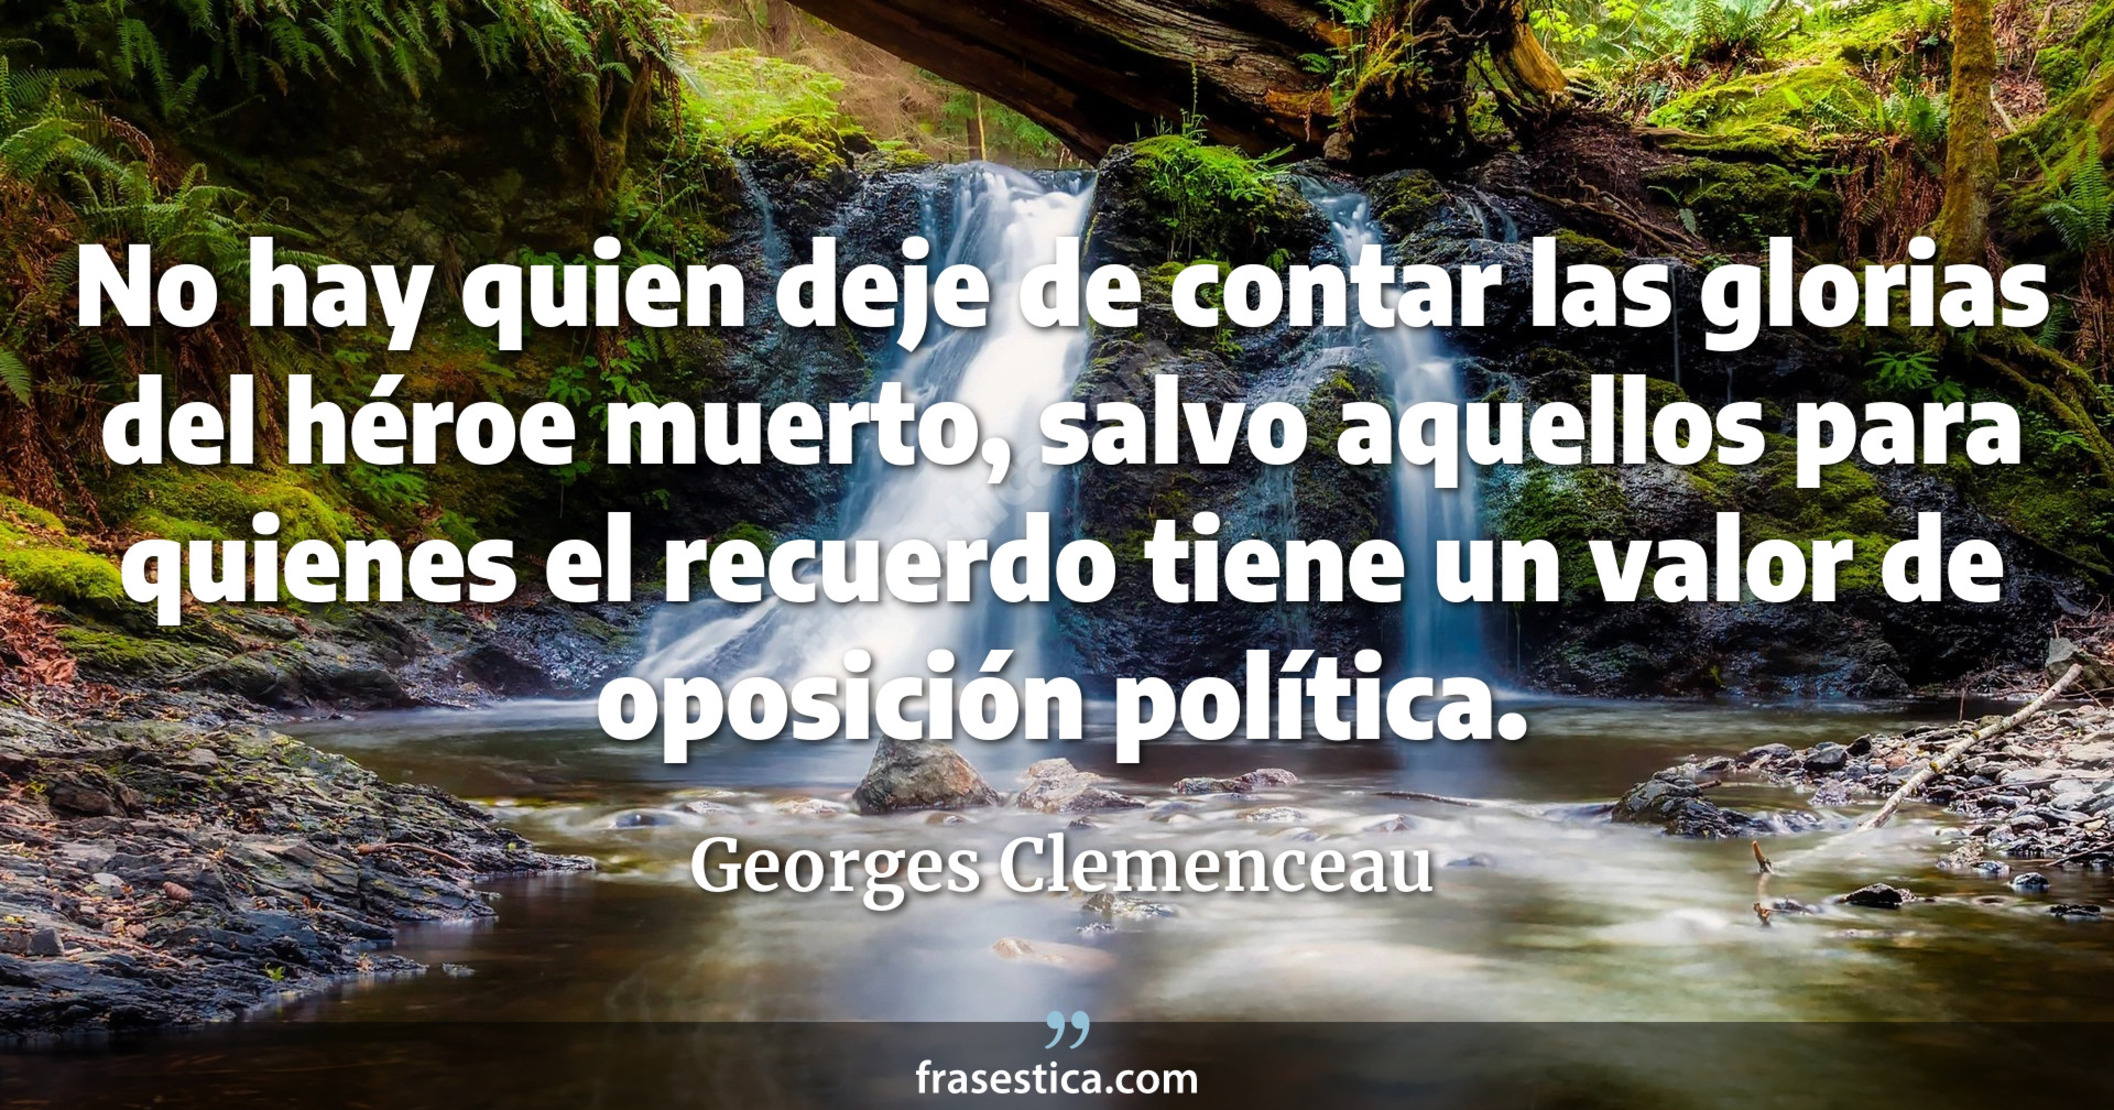 No hay quien deje de contar las glorias del héroe muerto, salvo aquellos para quienes el recuerdo tiene un valor de oposición política. - Georges Clemenceau